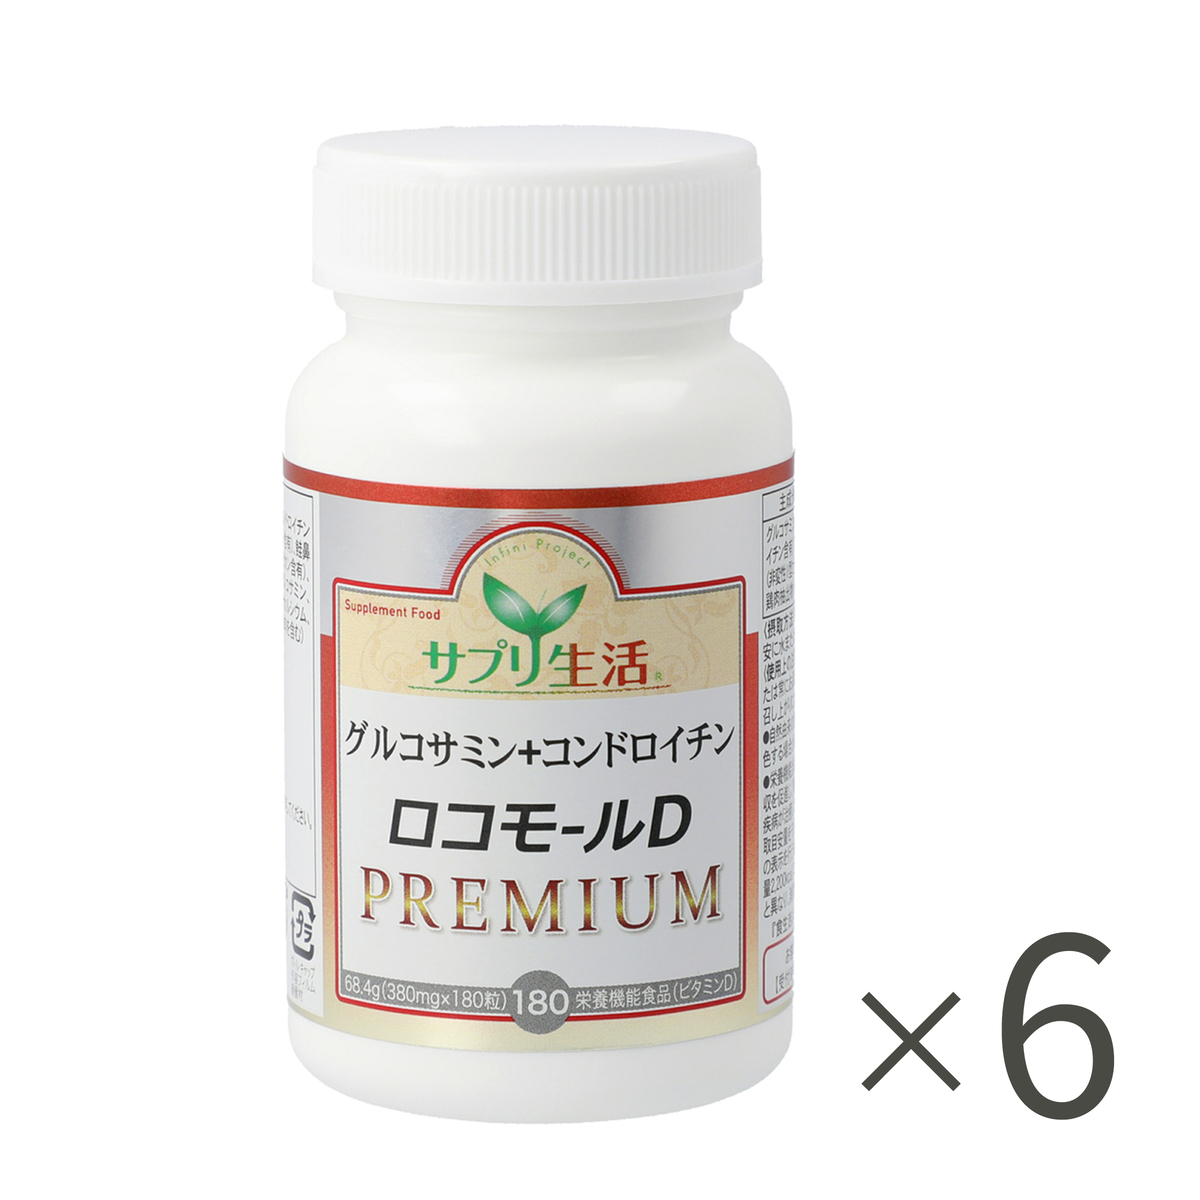 グルコサミン+コンドロイチン ロコモールDプレミアム 7個 - QVC.jp